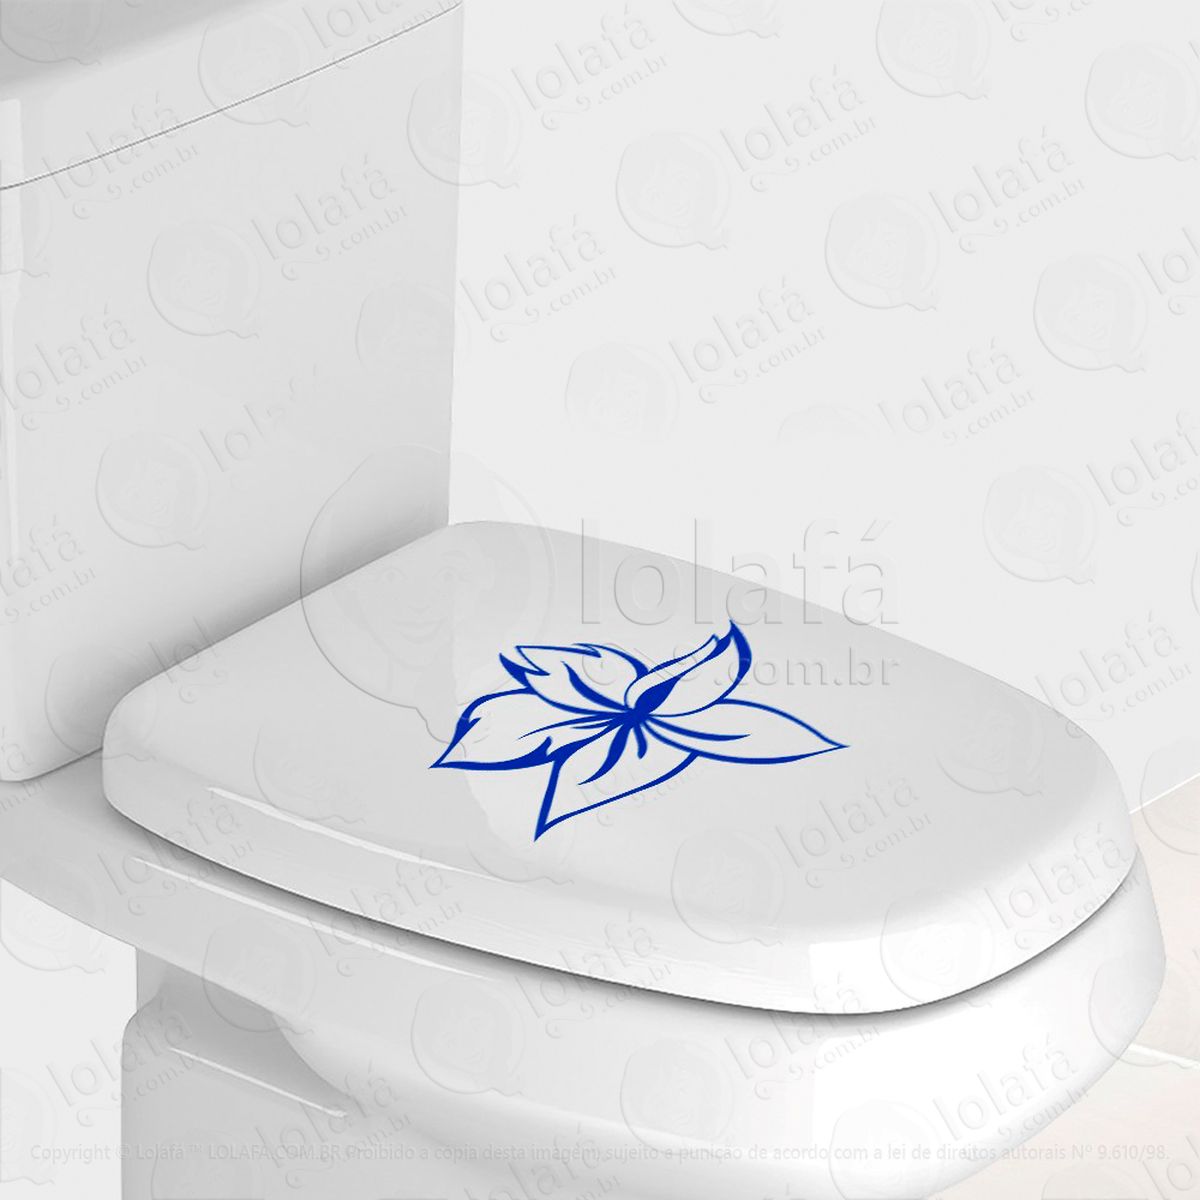 flor adesivo para vaso sanitário e privada - mod:91